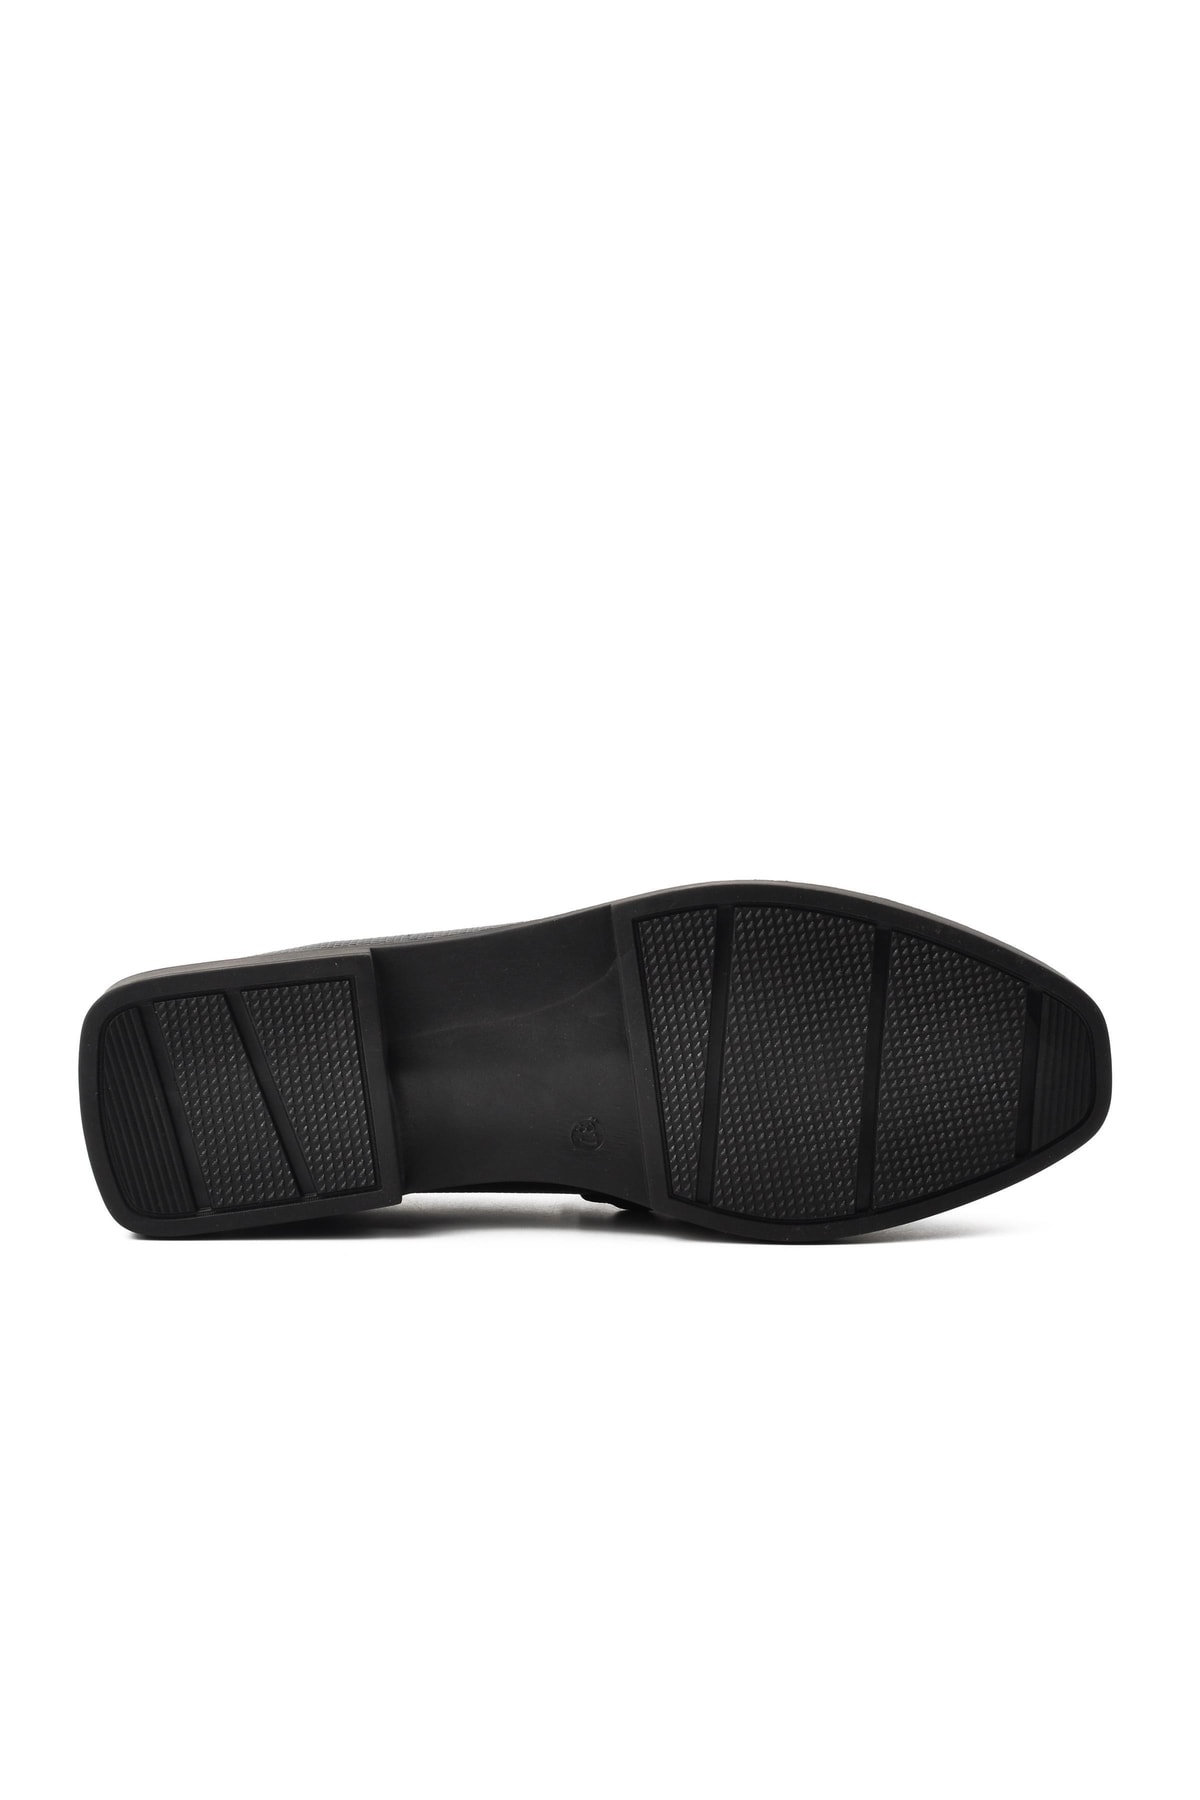 Pierre Cardin Siyah Kadın Günlük Ayakkabı VB7046